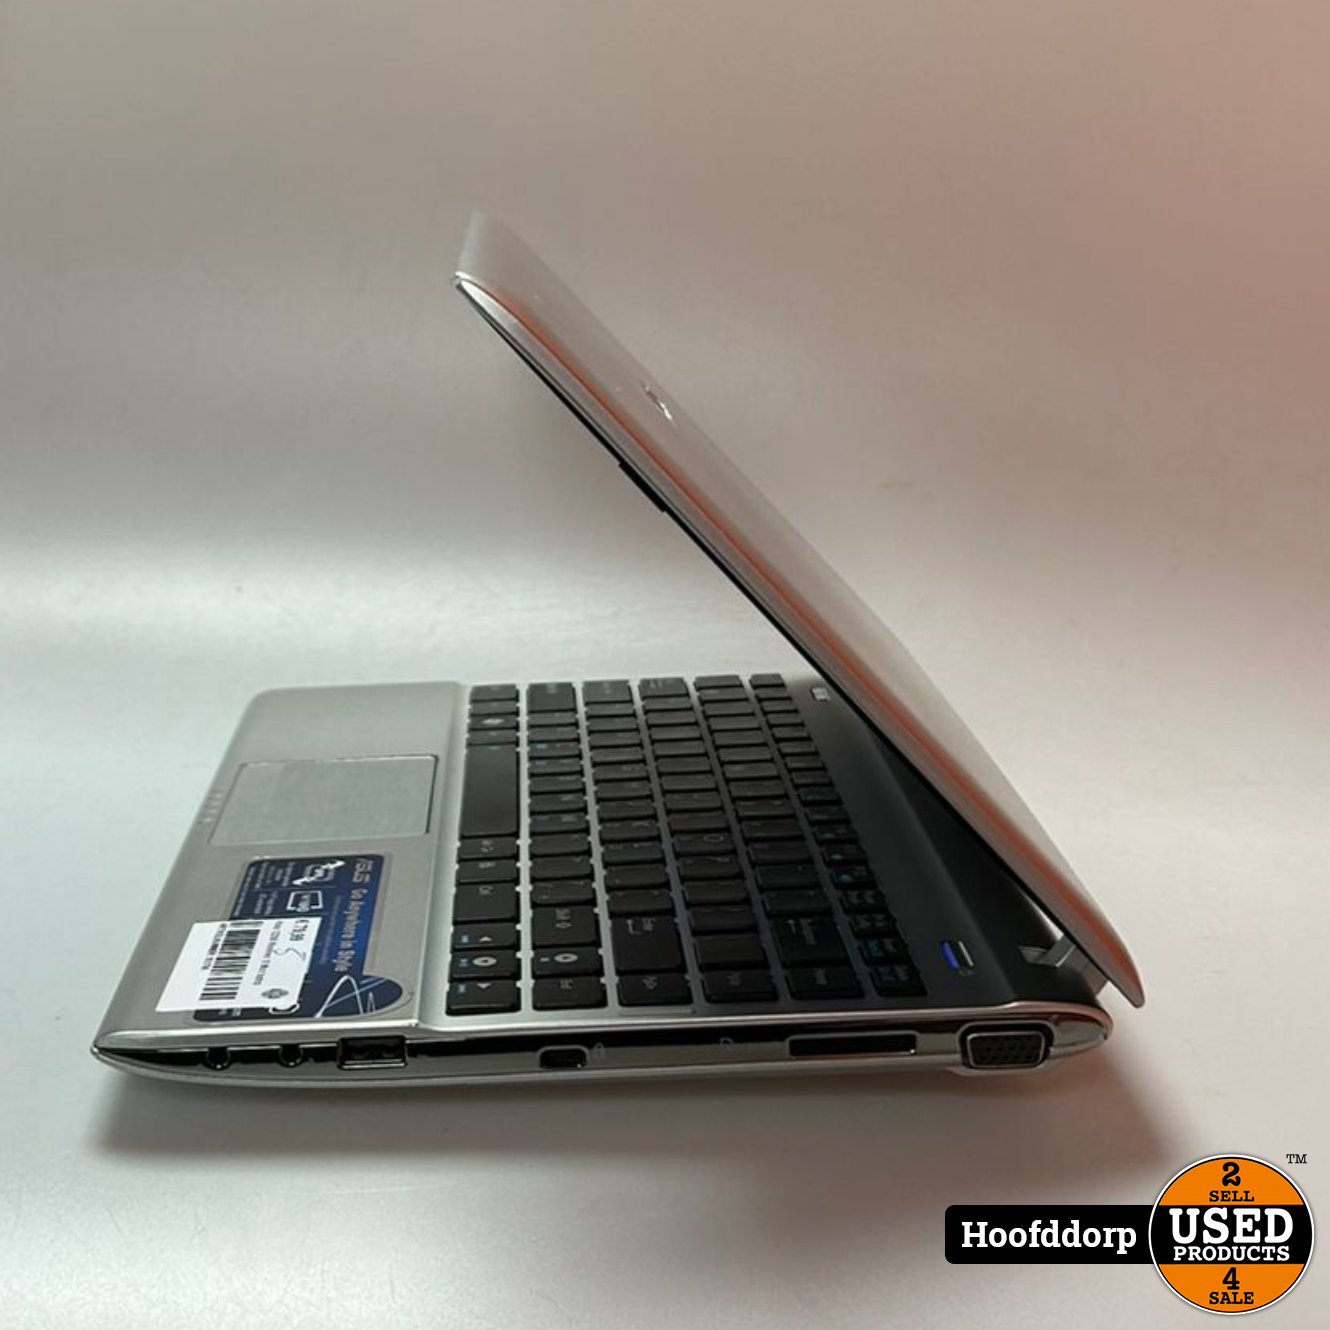 bank Hoop van Scenario Asus 1225B Windows 10 Mini laptop - Used Products Hoofddorp